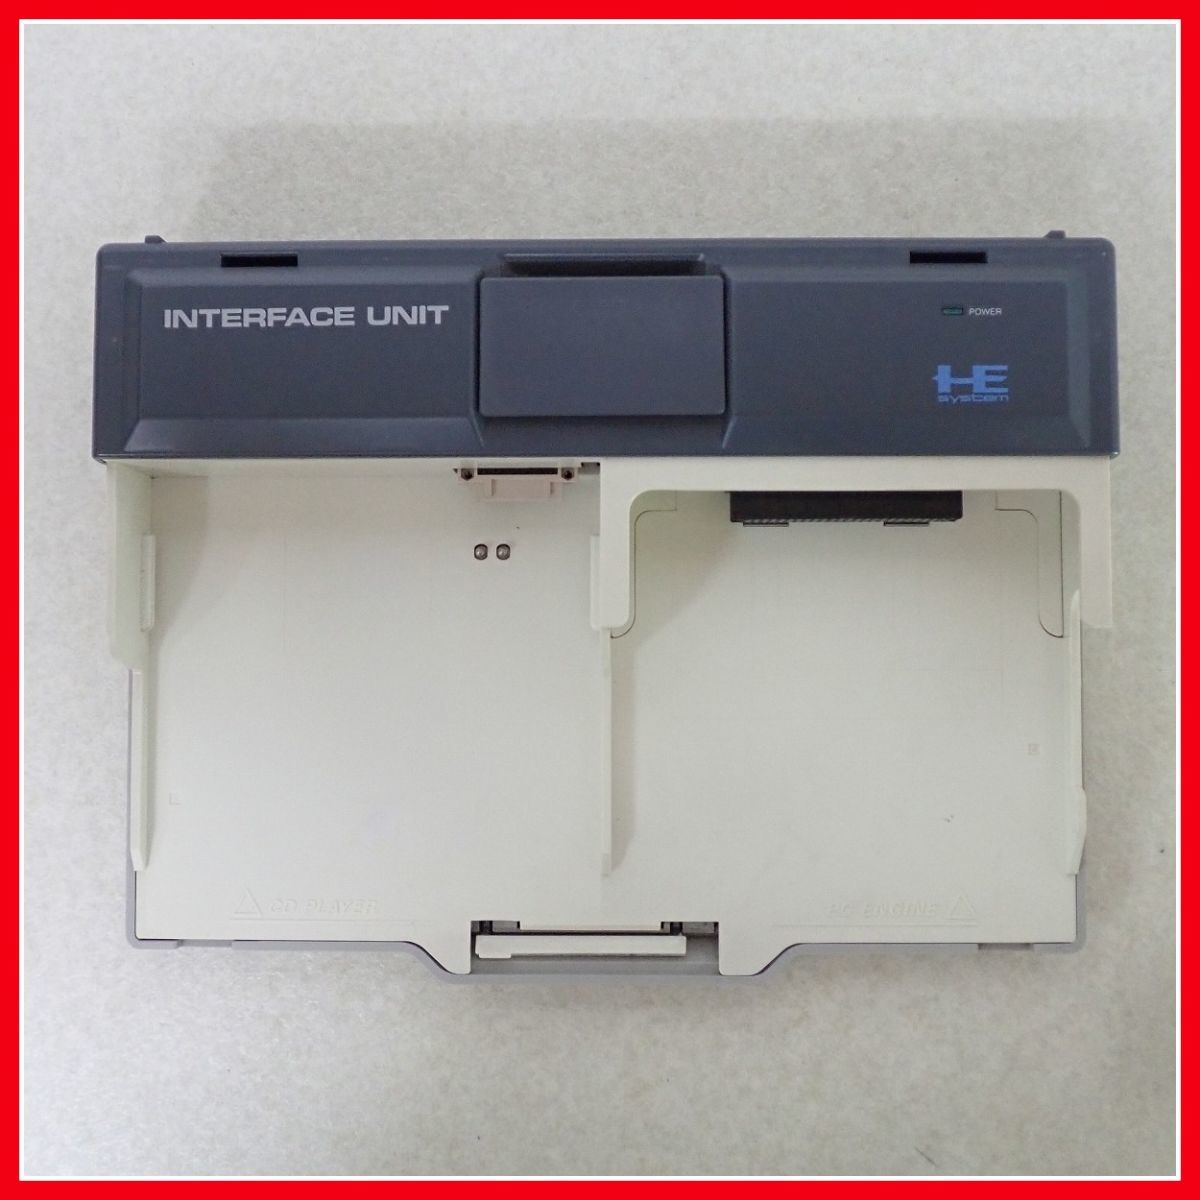 PCE PCエンジン CD-ROM2 システム 本体 CDR-30A + インターフェース 